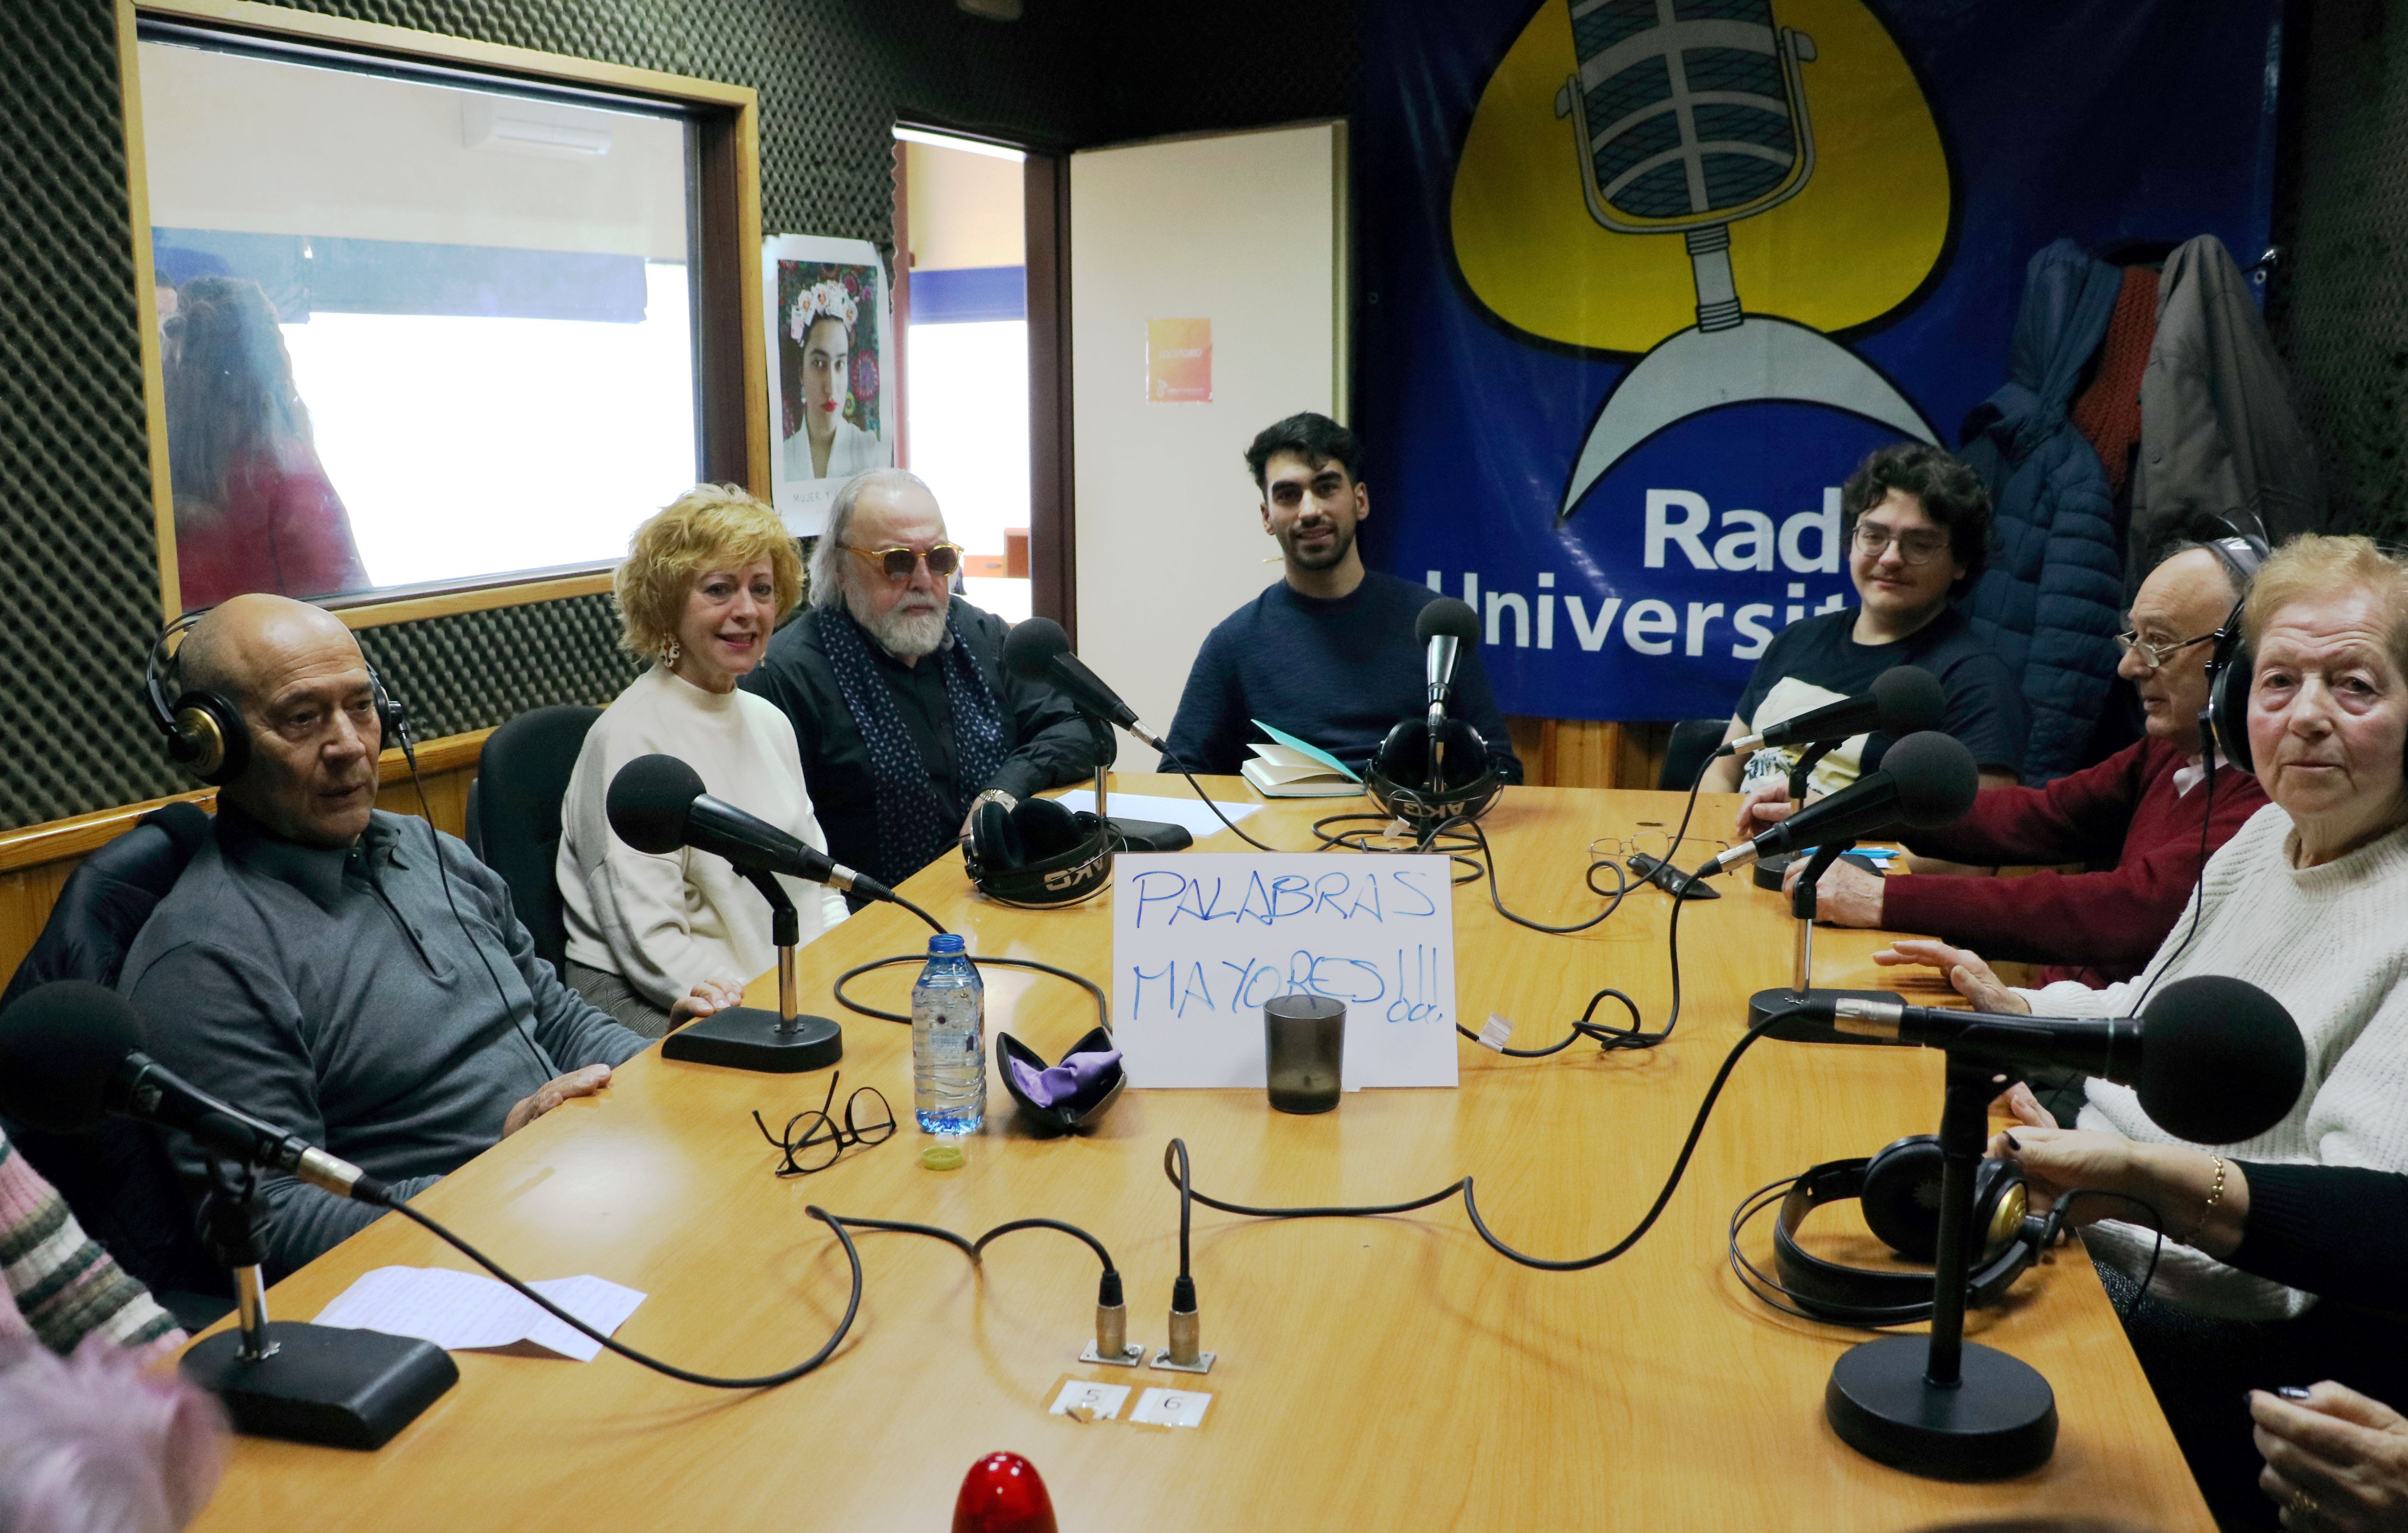 Juan Carlos Uriarte y Belén Ordóñez han participado en esta jornada por el Día de la Radio. | L.N.C.